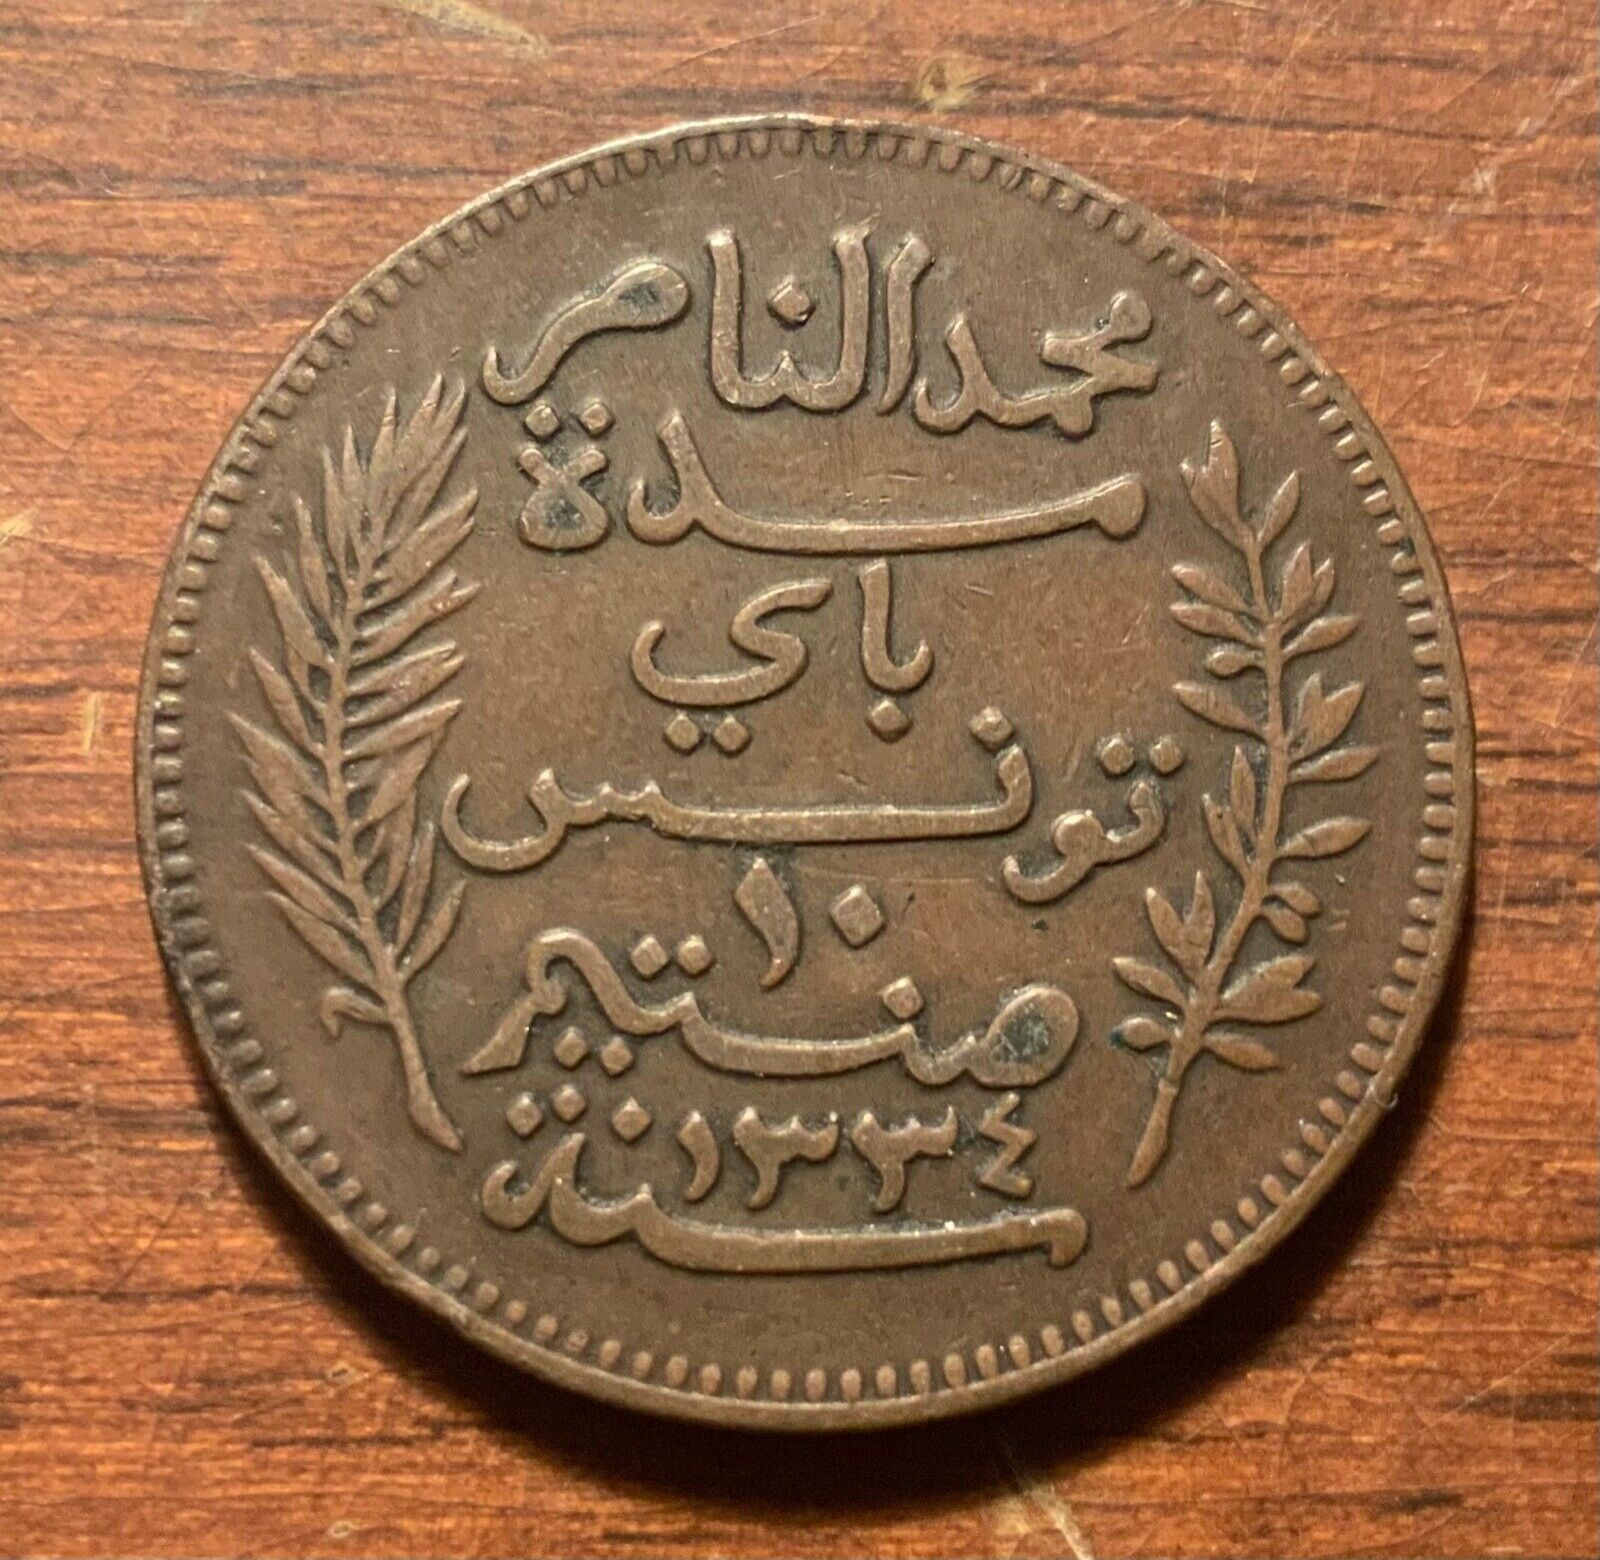 1916 Tunisia 10 Centimes - High Grade